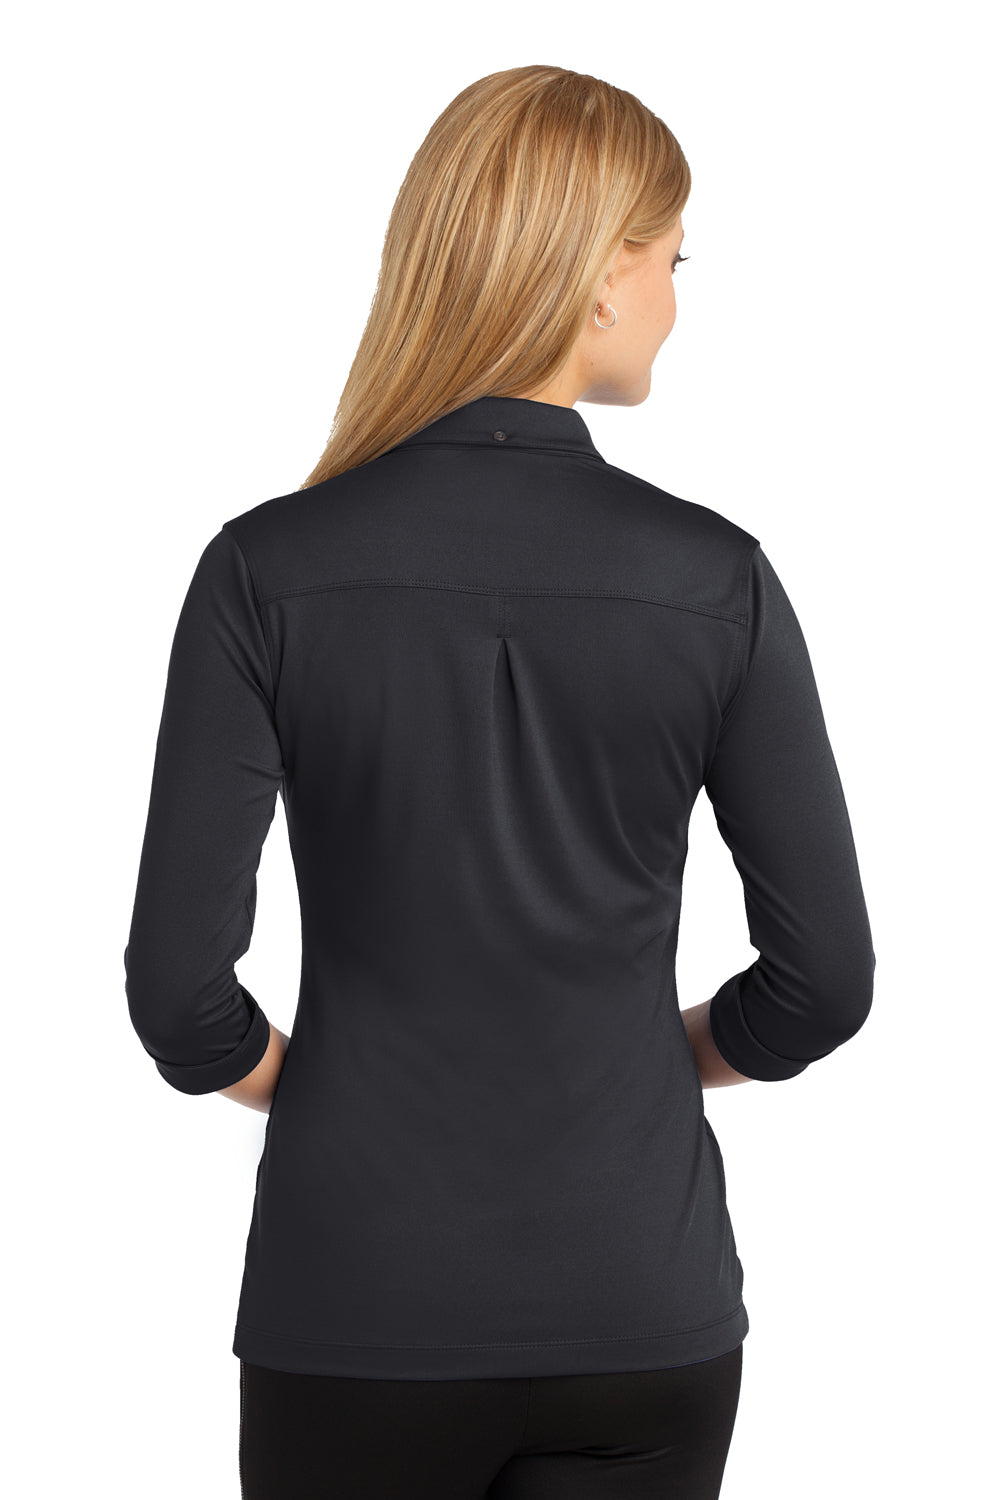 Ogio LOG122 Womens Gauge Moisture Wicking 3/4 Sleeve Polo Shirt Black Back